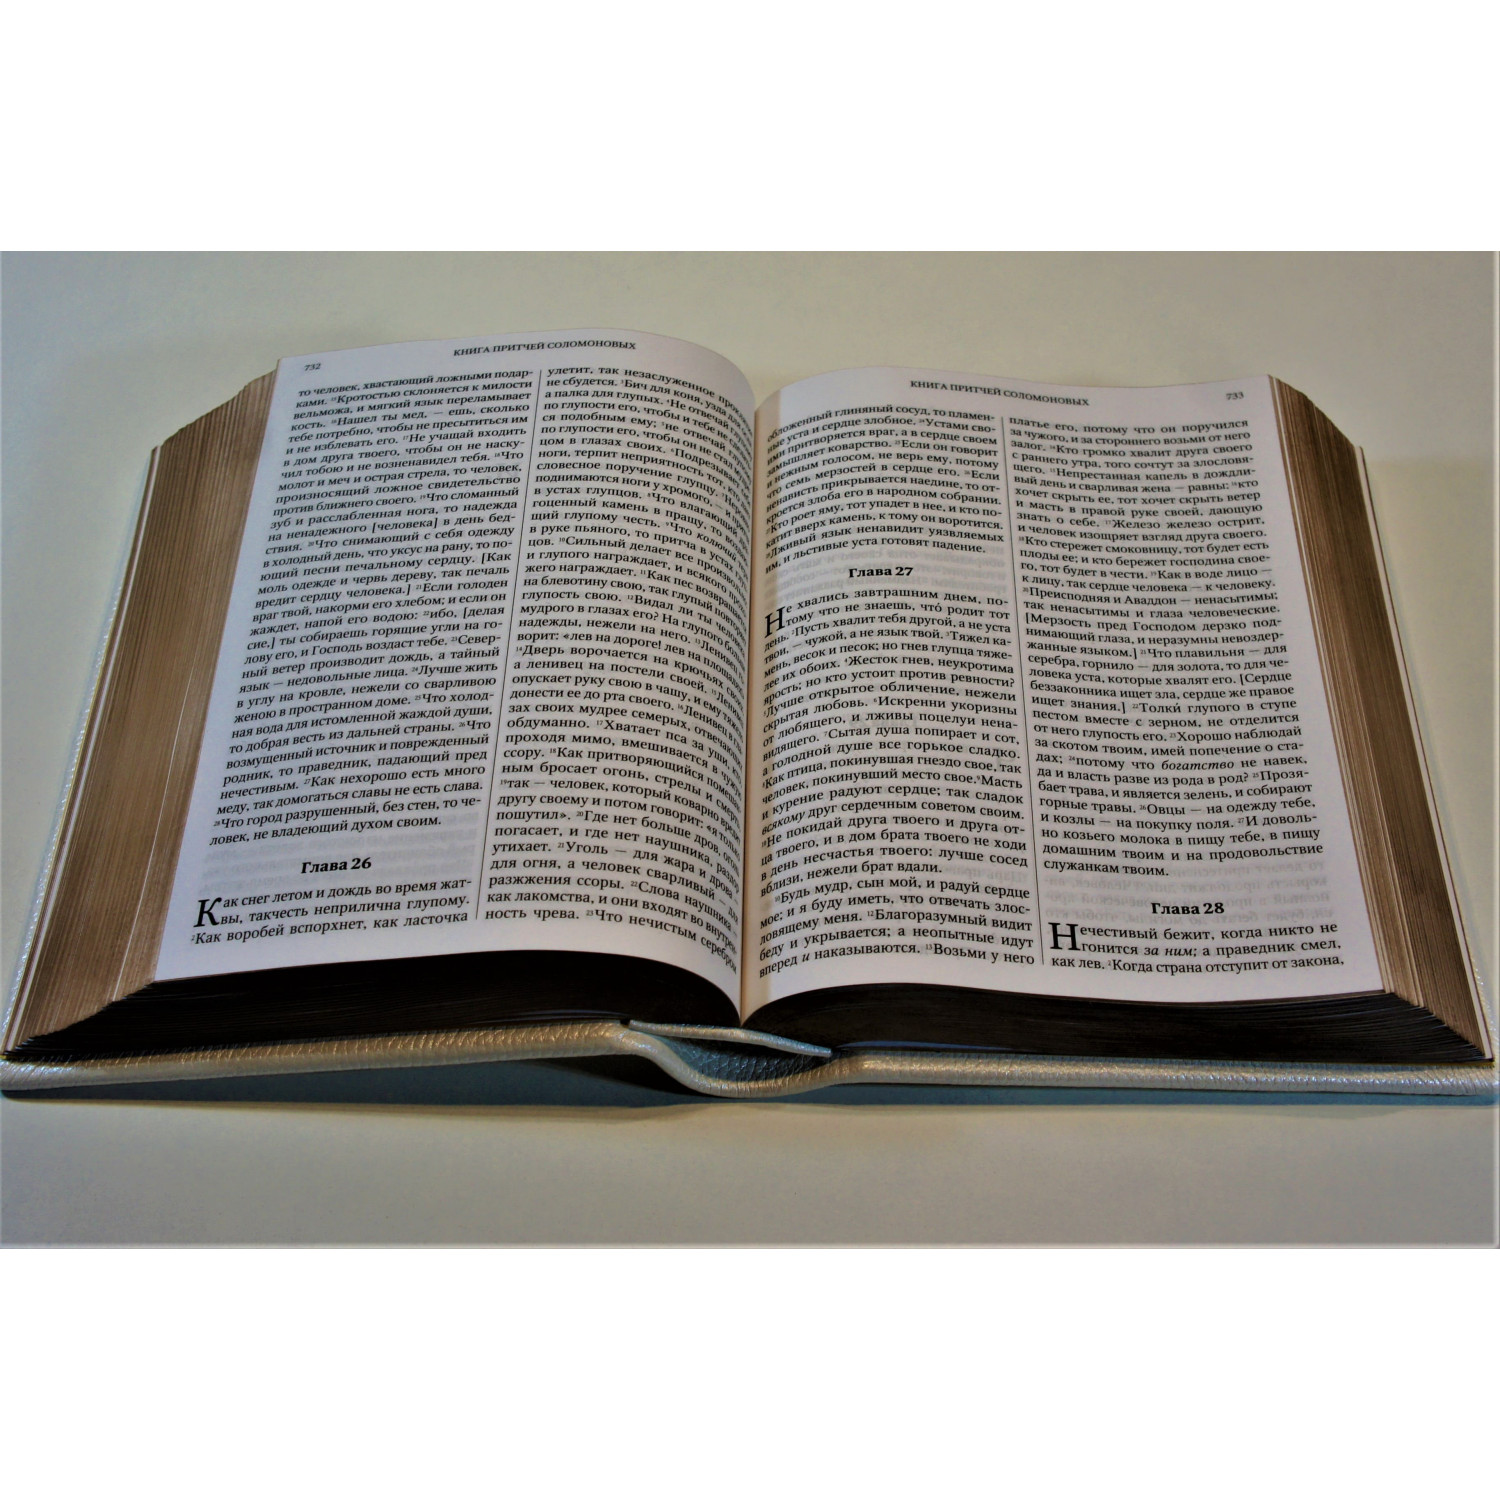 Библия: книги Священного писания Ветхого и Нового Завета в кожаном переплете ручной работы